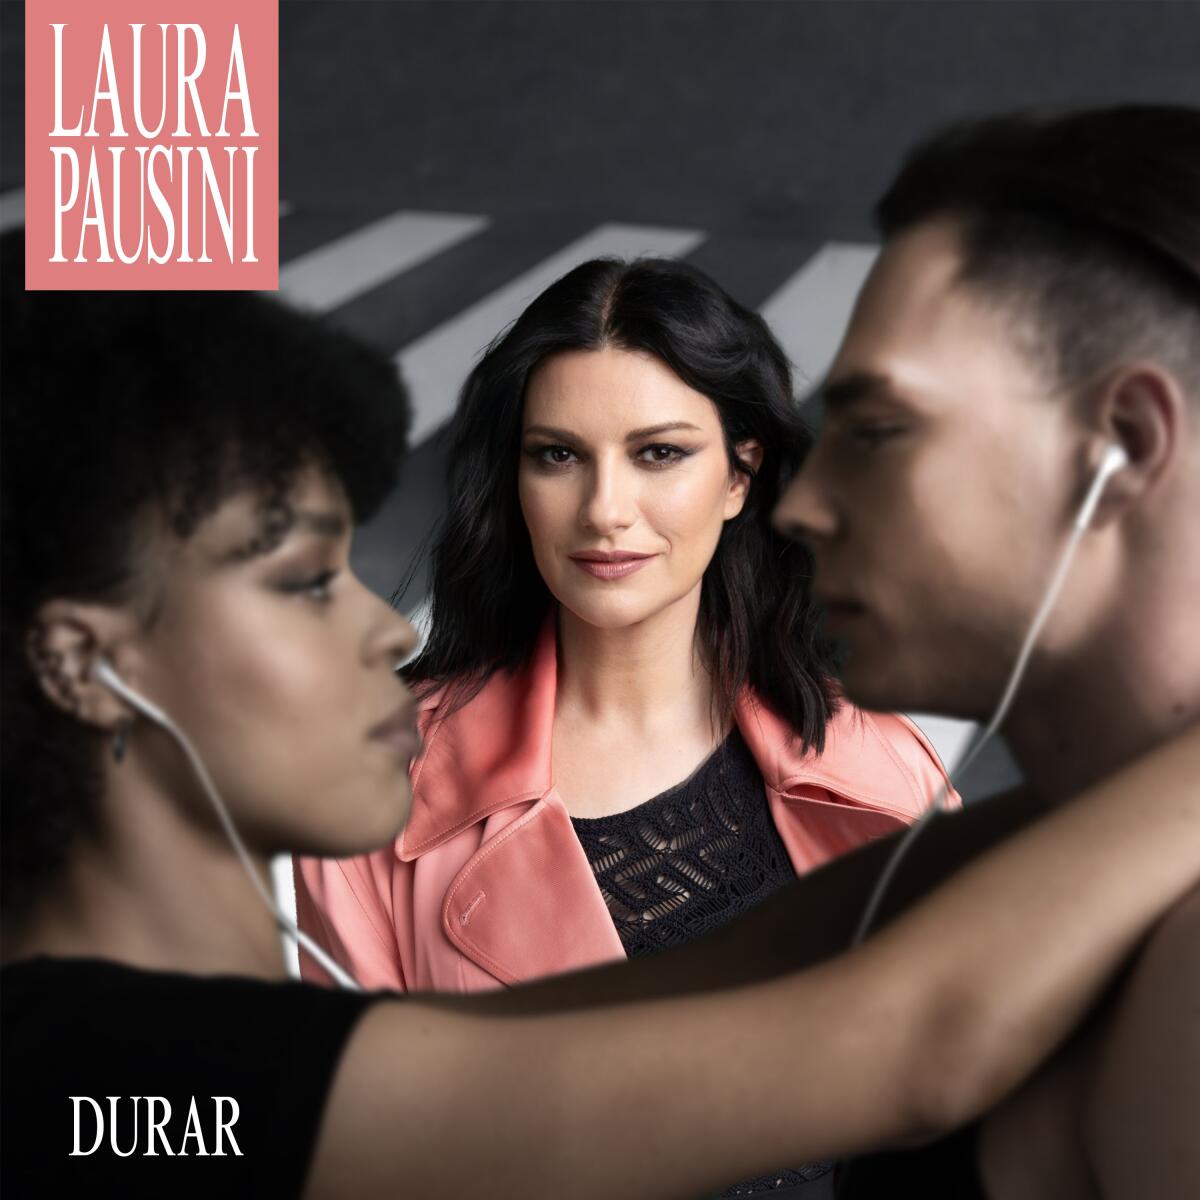 'Durar' es la nueva propuesta musical y el primer sencillo de su próximo álbum "Almas paralelas".